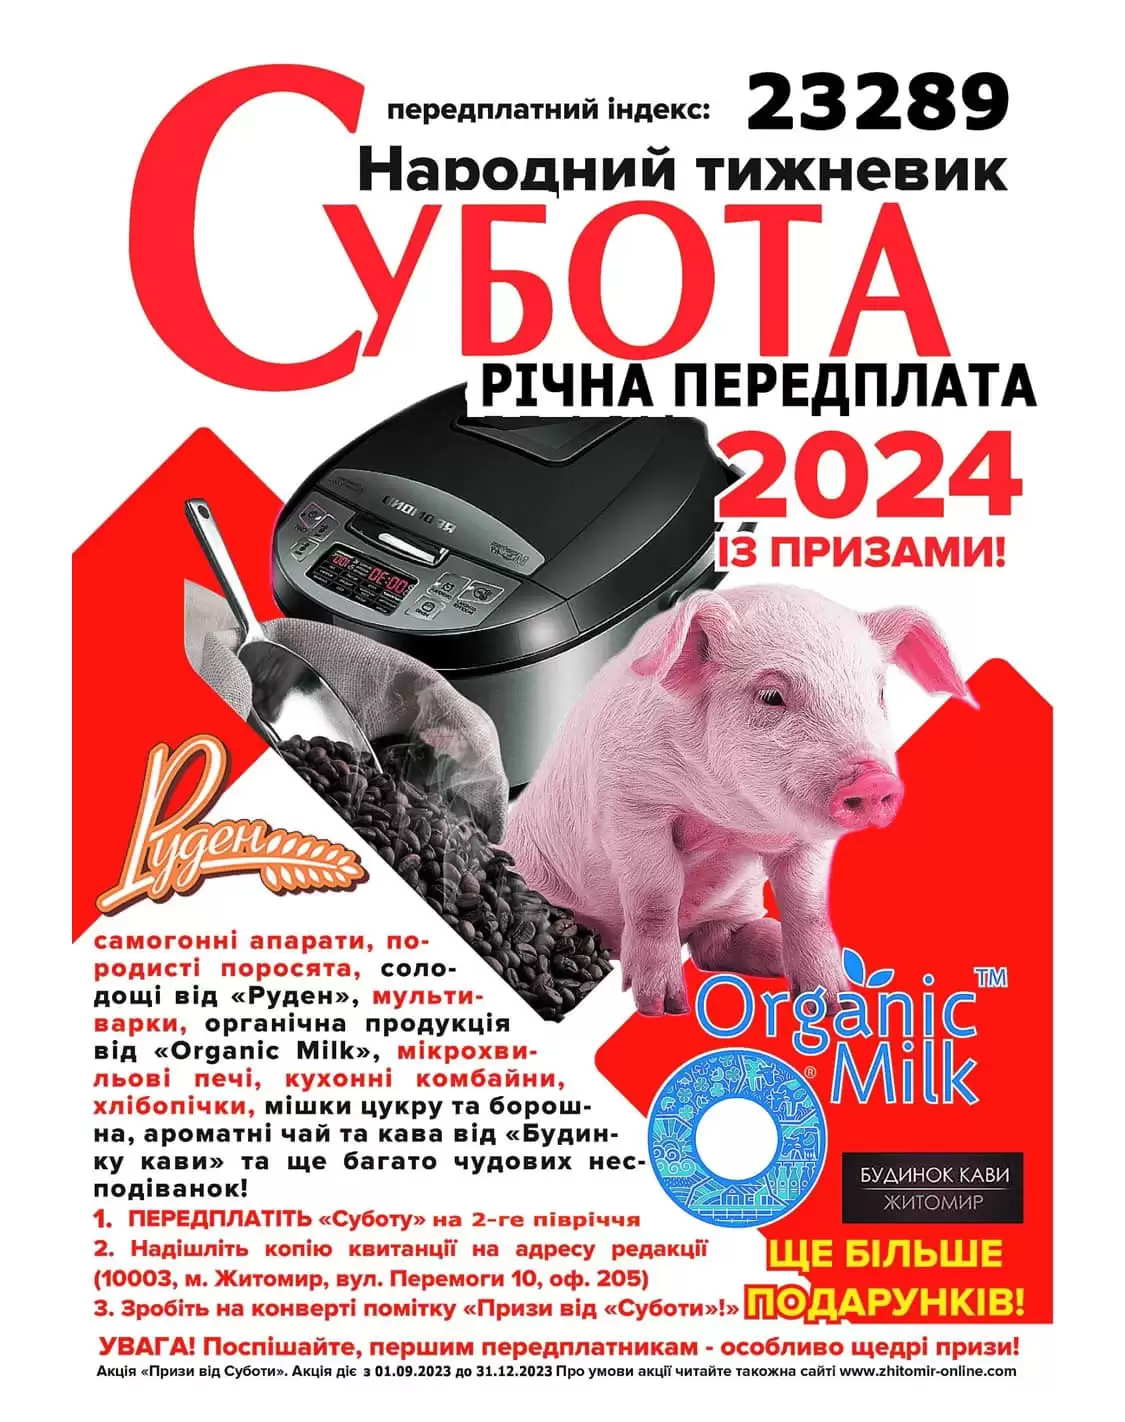 Житомирський тижневик «Субота» обіцяє читачам самогонні апарати і поросят за передплату